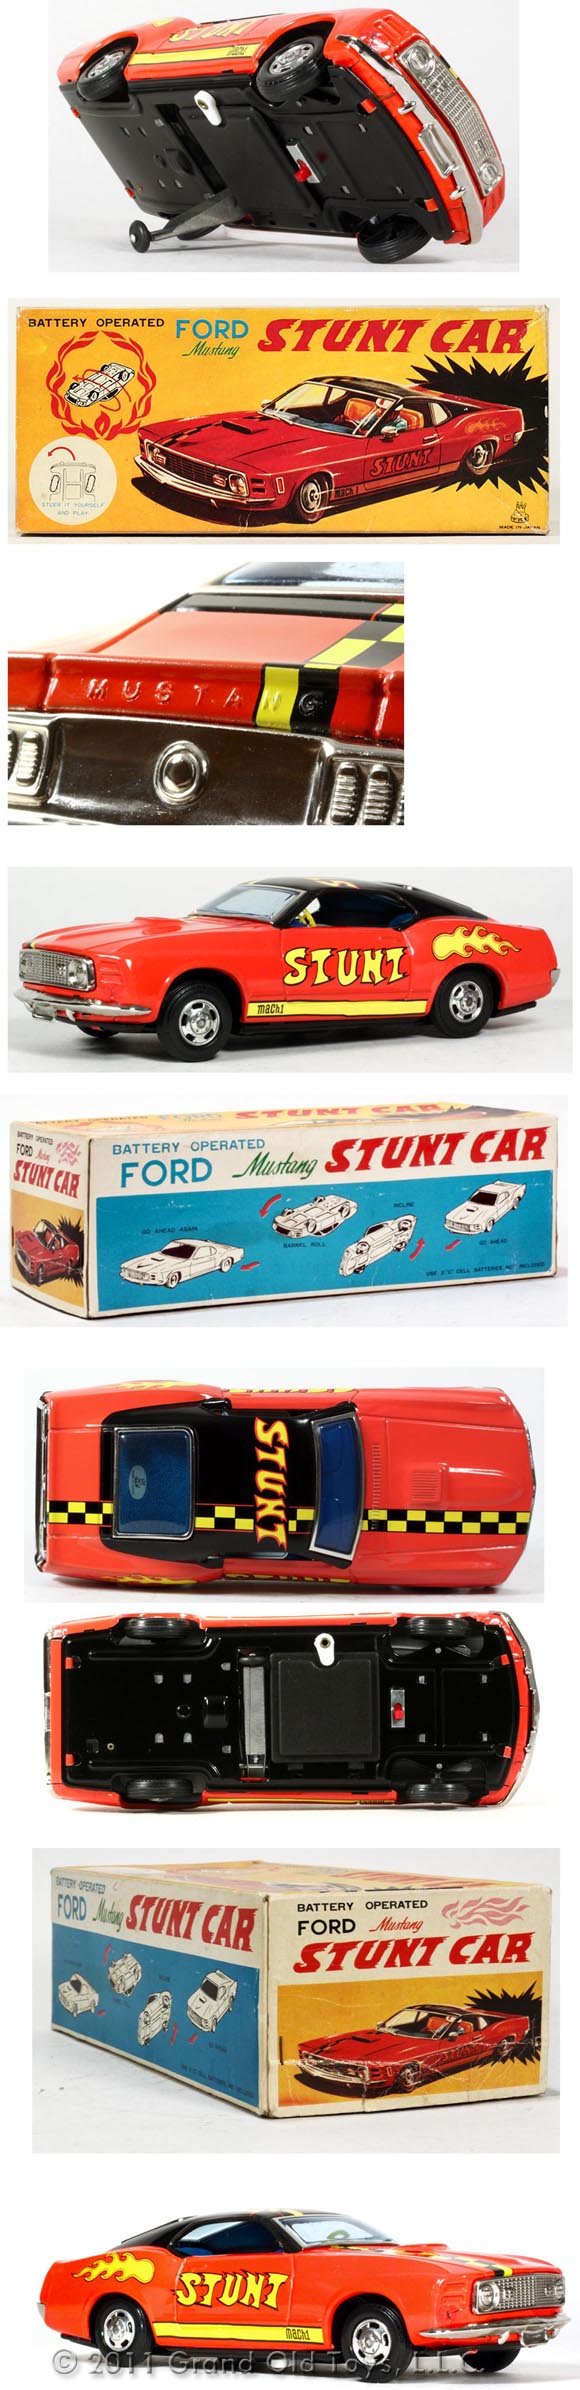 1970 TPS Ford Mustang Stunt Car In Original Box